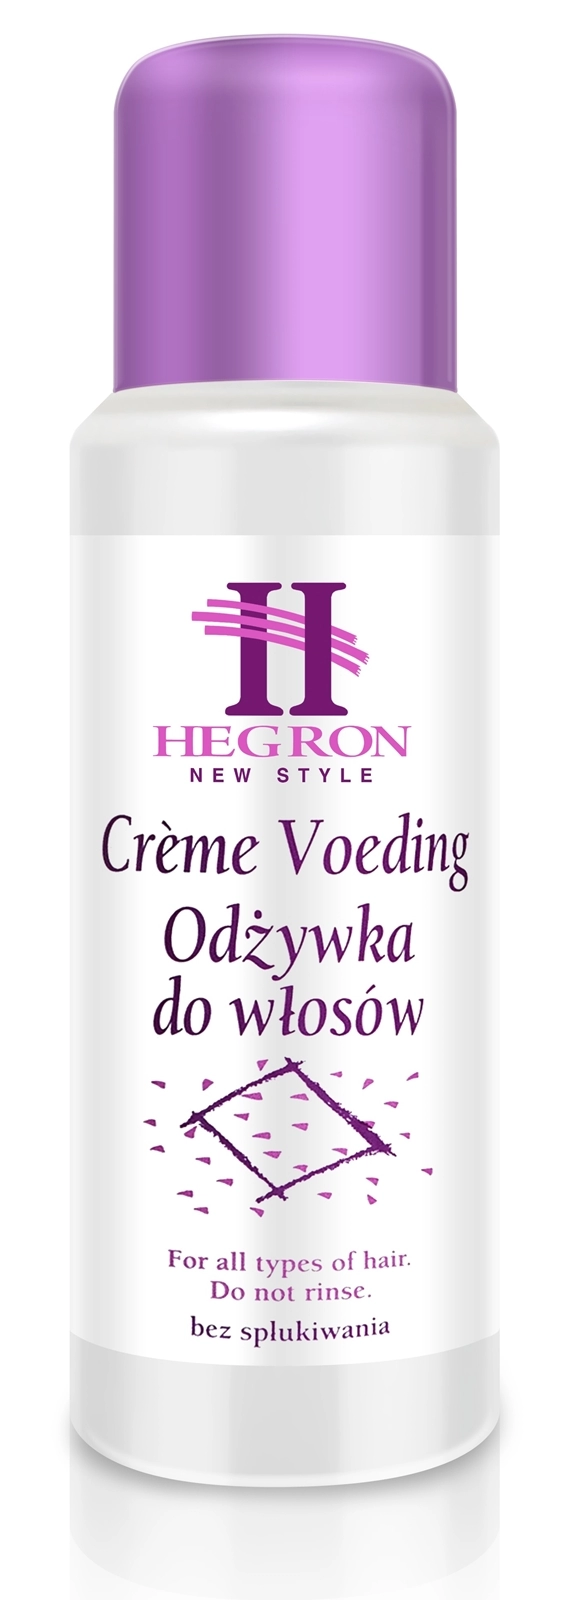 hegron creme voeding odżywka do włosów